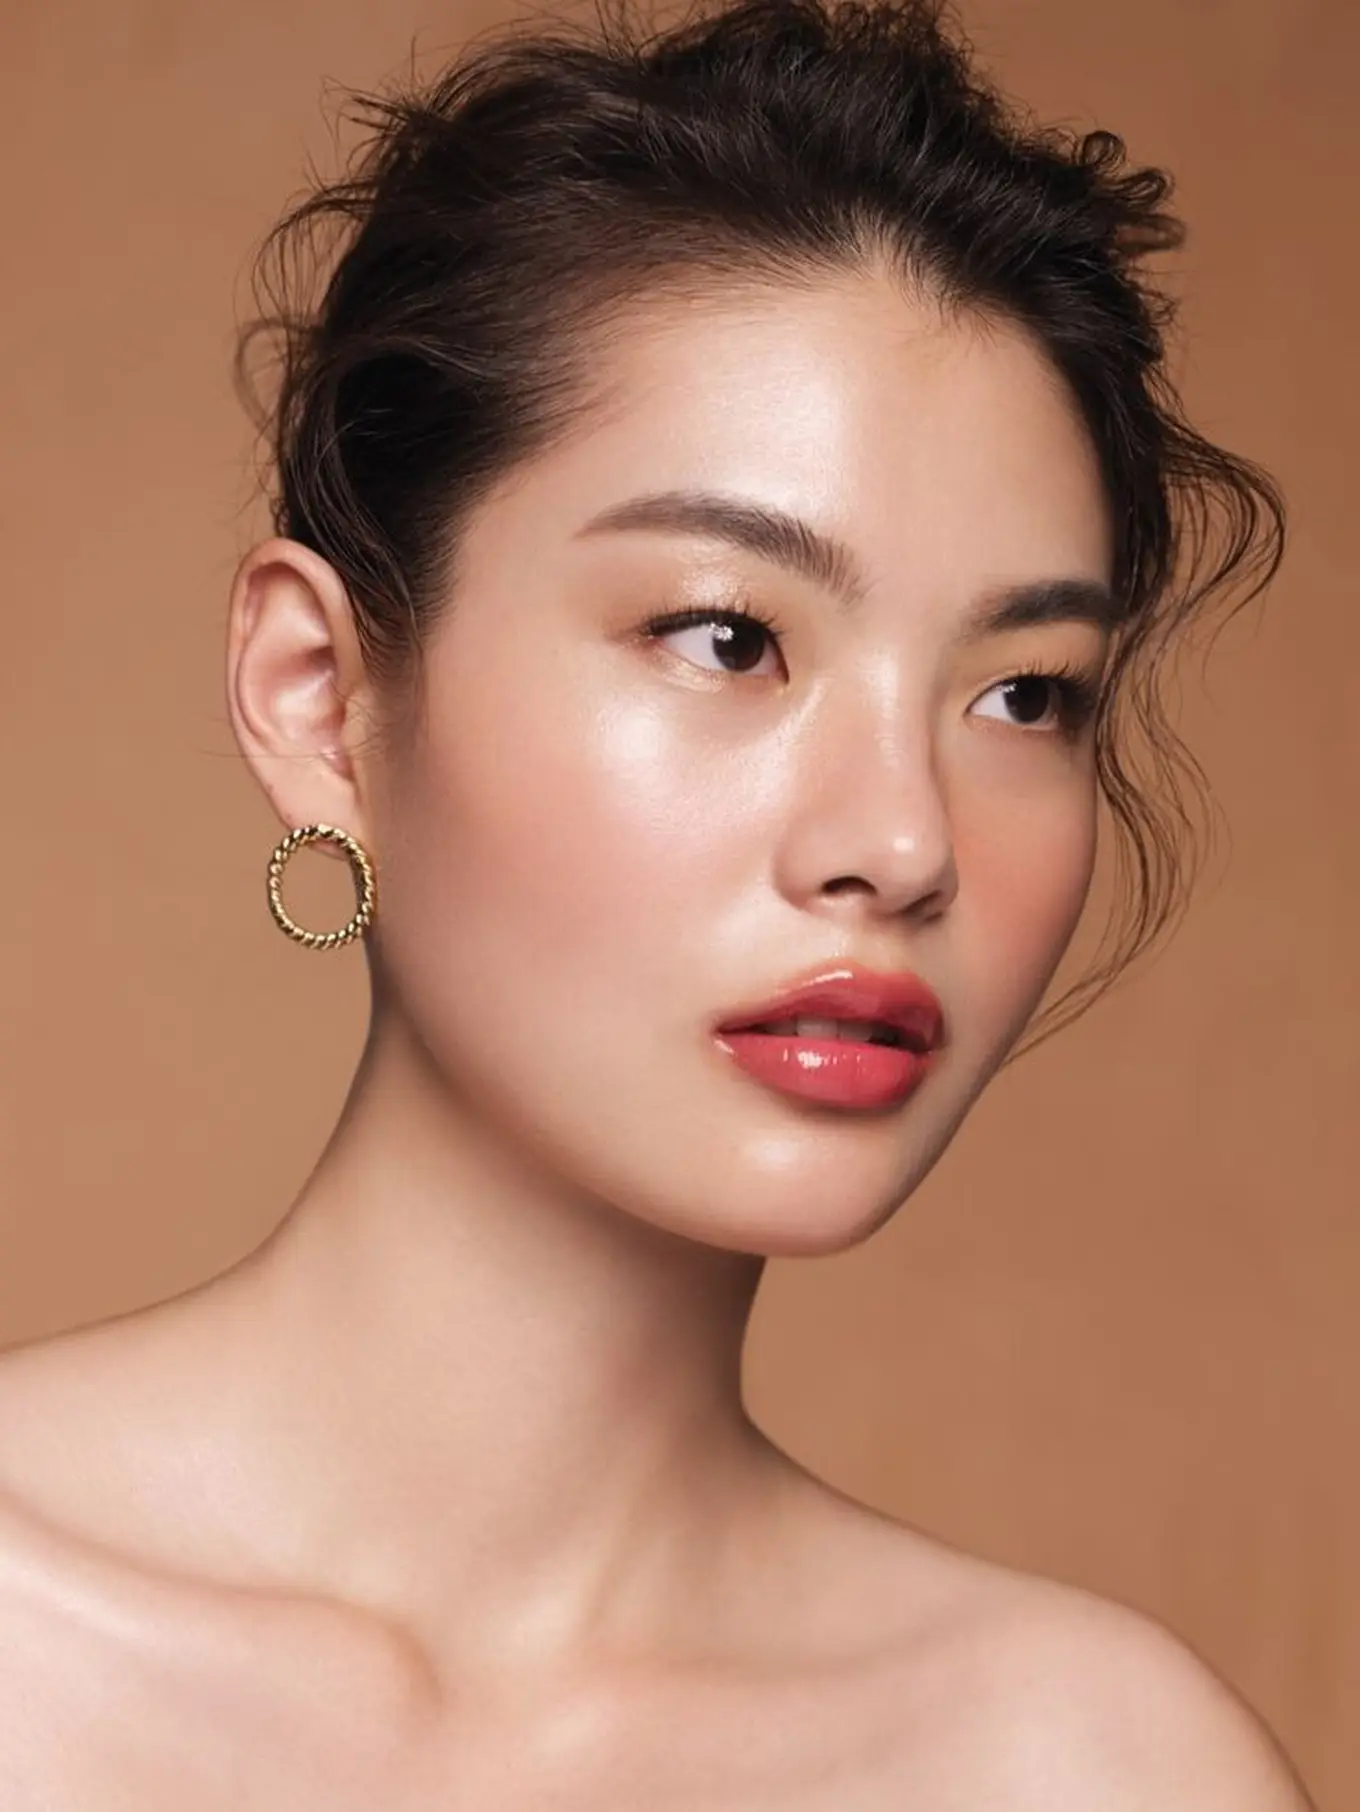 Western Makeup Vs Korean Makeup Mana Yang Paling Menarik Beauty 